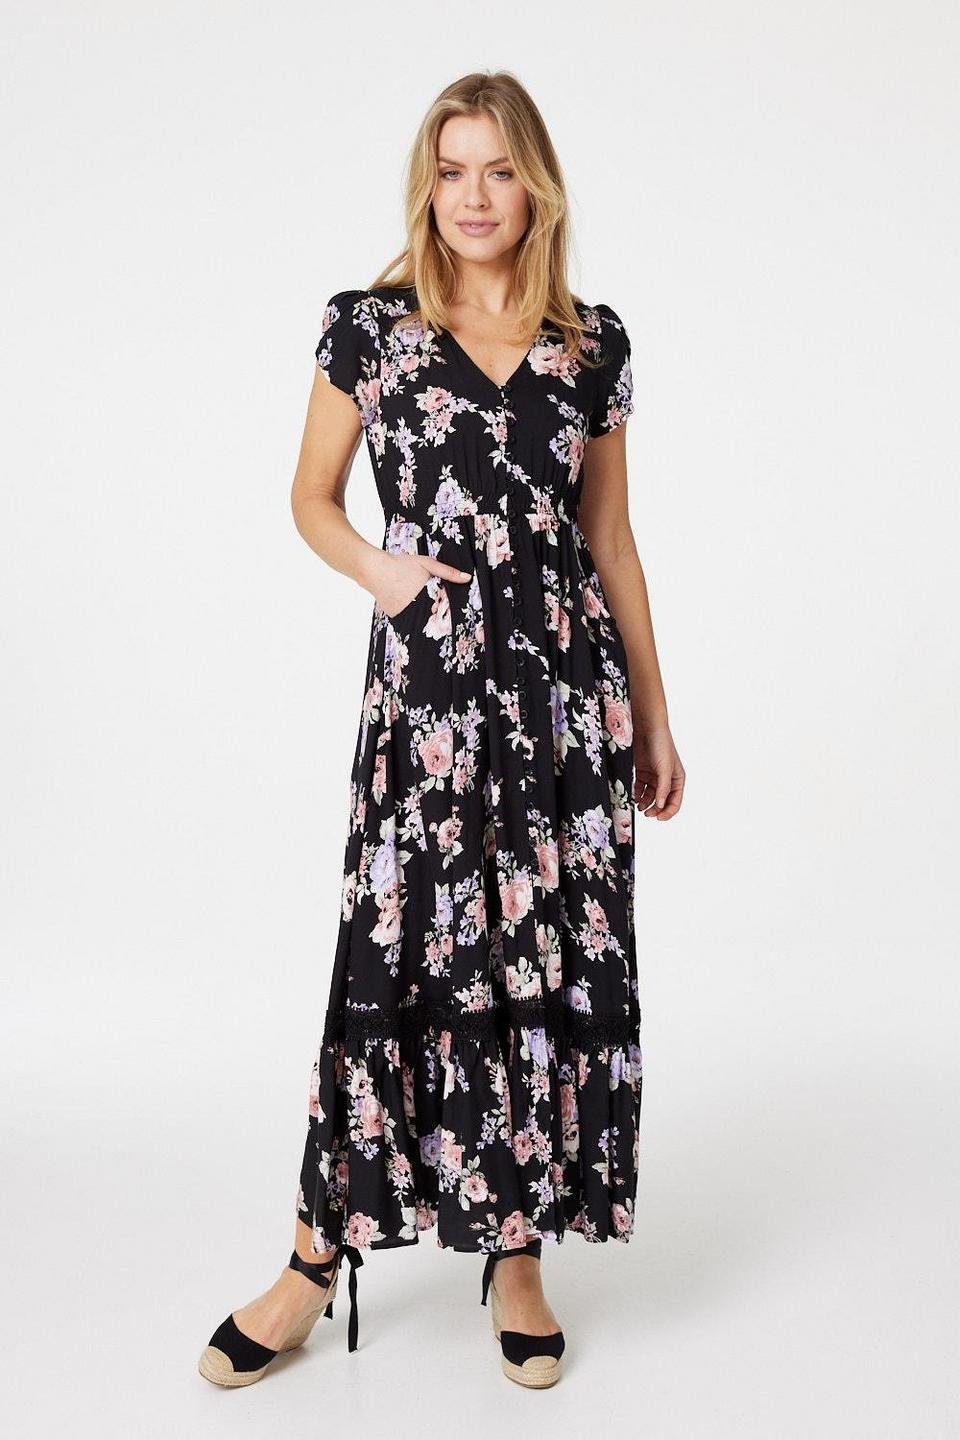 Dresses | Floral Lace Trim Maxi Dress | Izabel London